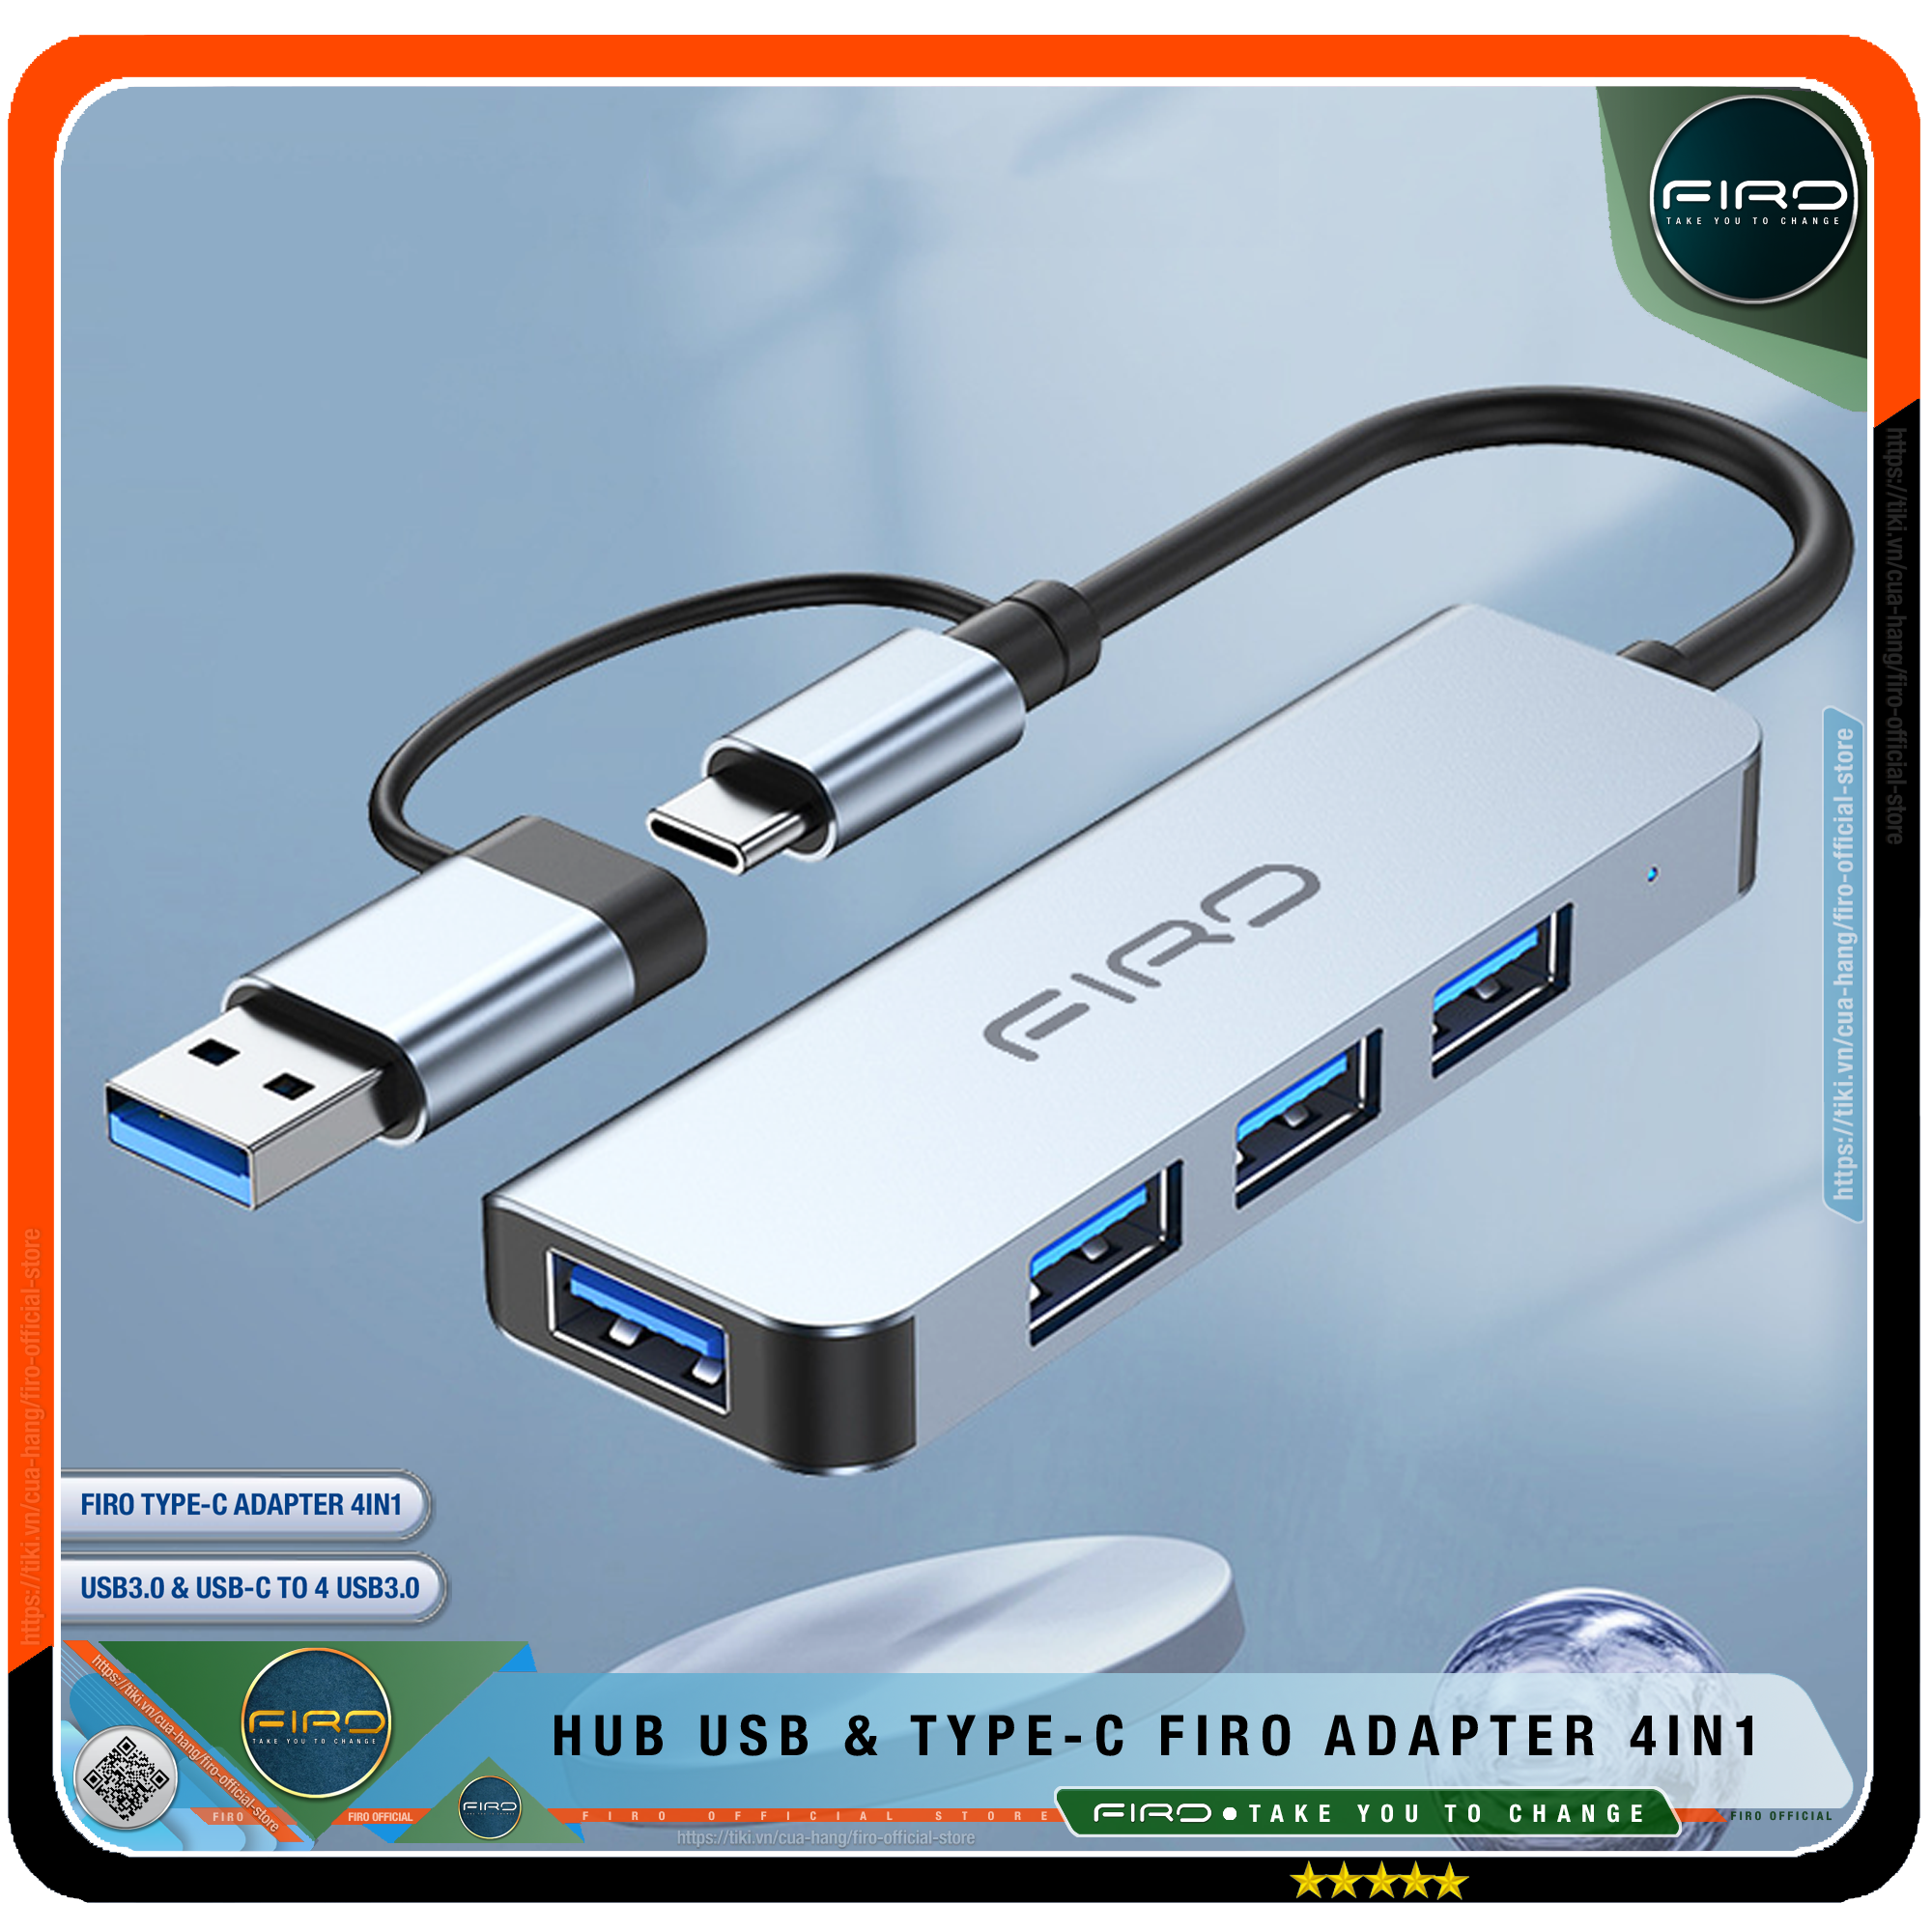 Hub Type C FIRO Và Hub USB FIRO 3.0 Adapter 4in1 - Bộ Chia USB FIRO Ra Nhiều Cổng Kết Nối Chuyển Đổi Cho Laptop,PC, Máy Tính Đa Năng - Hub FIRO Hỗ Trợ Sạc Pin, Kết Nối Đa Năng Ổ Cứng, Bàn Phím, Chuột, Máy In, Thiết Bị Chia Ổ USB - Hàng Chính Hãng